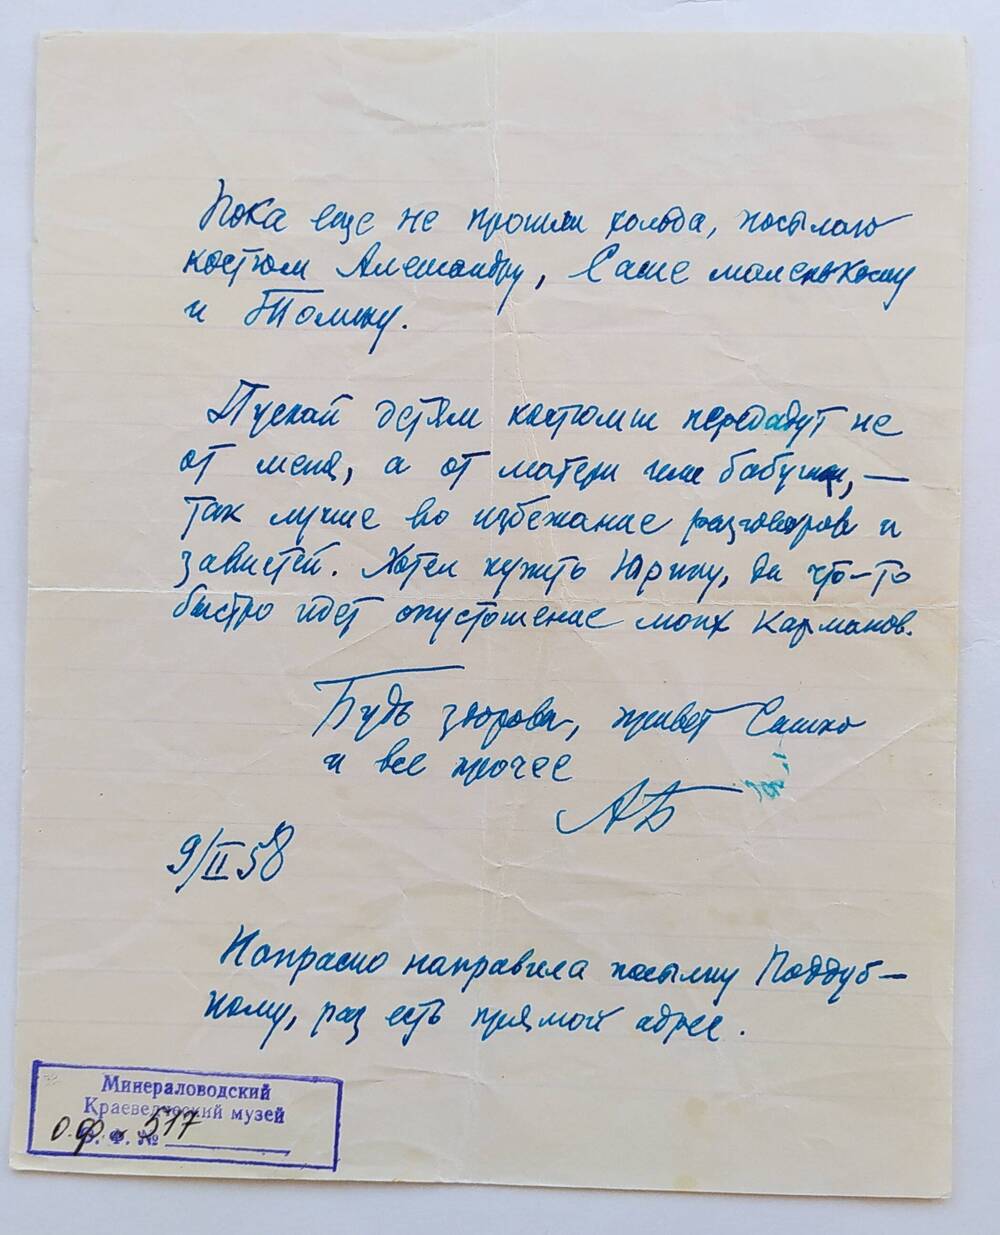 Письмо О.А. Бауэр-Бибик от отца, датировано 9/II-58, пос. Голицыно, написано чернильной ручкой синего цвета на тетрадном листе в линию.